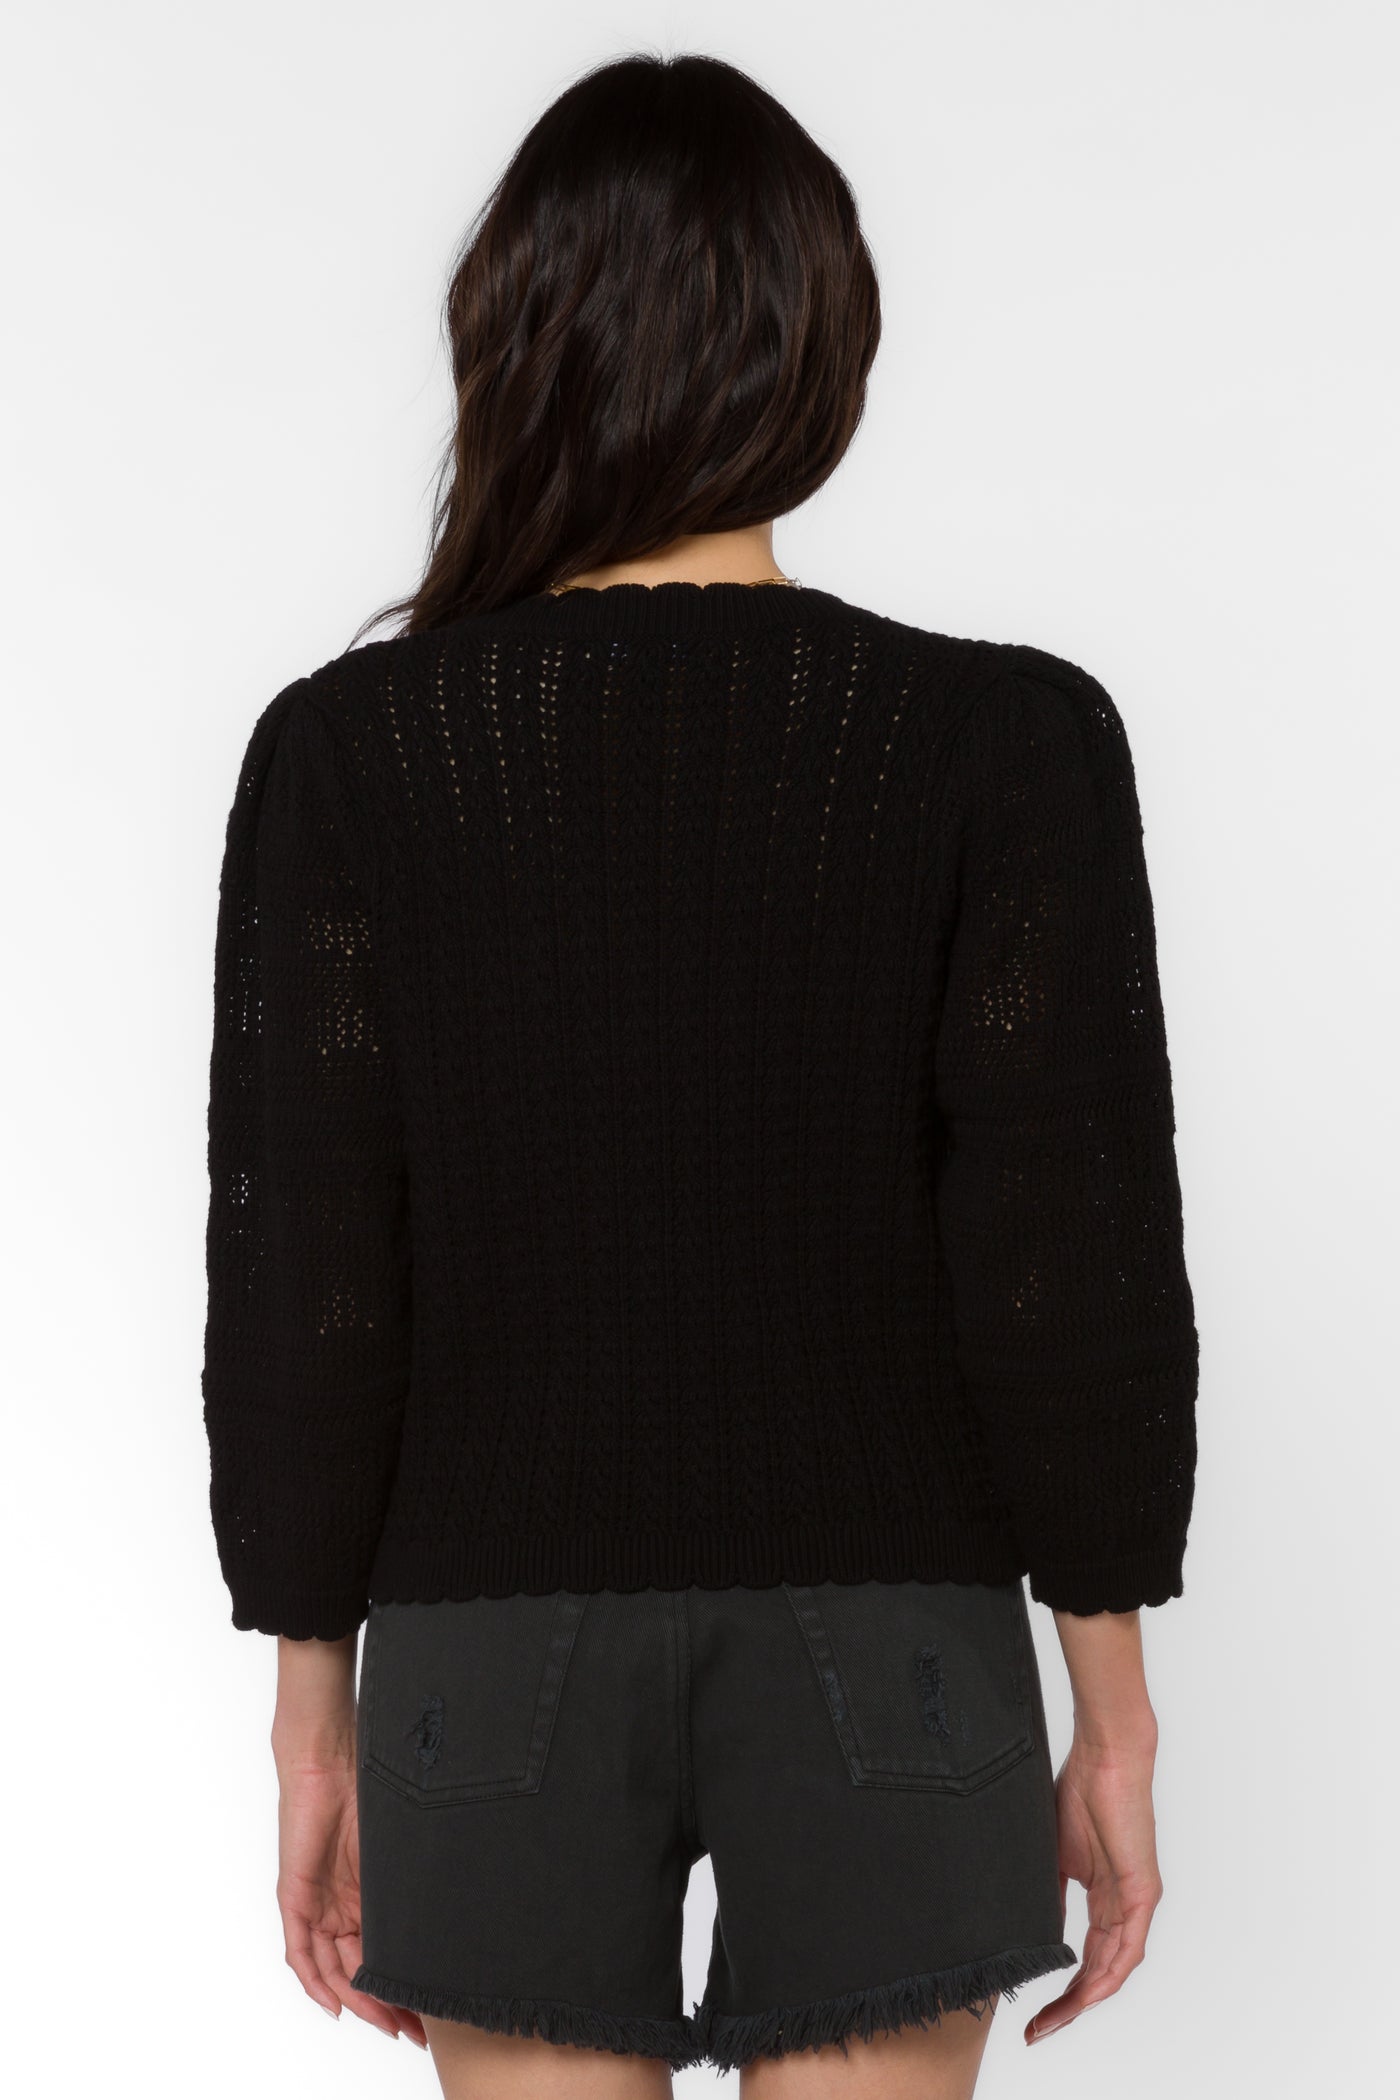 Gazelle Black Sweater - Sweaters - Velvet Heart Clothing